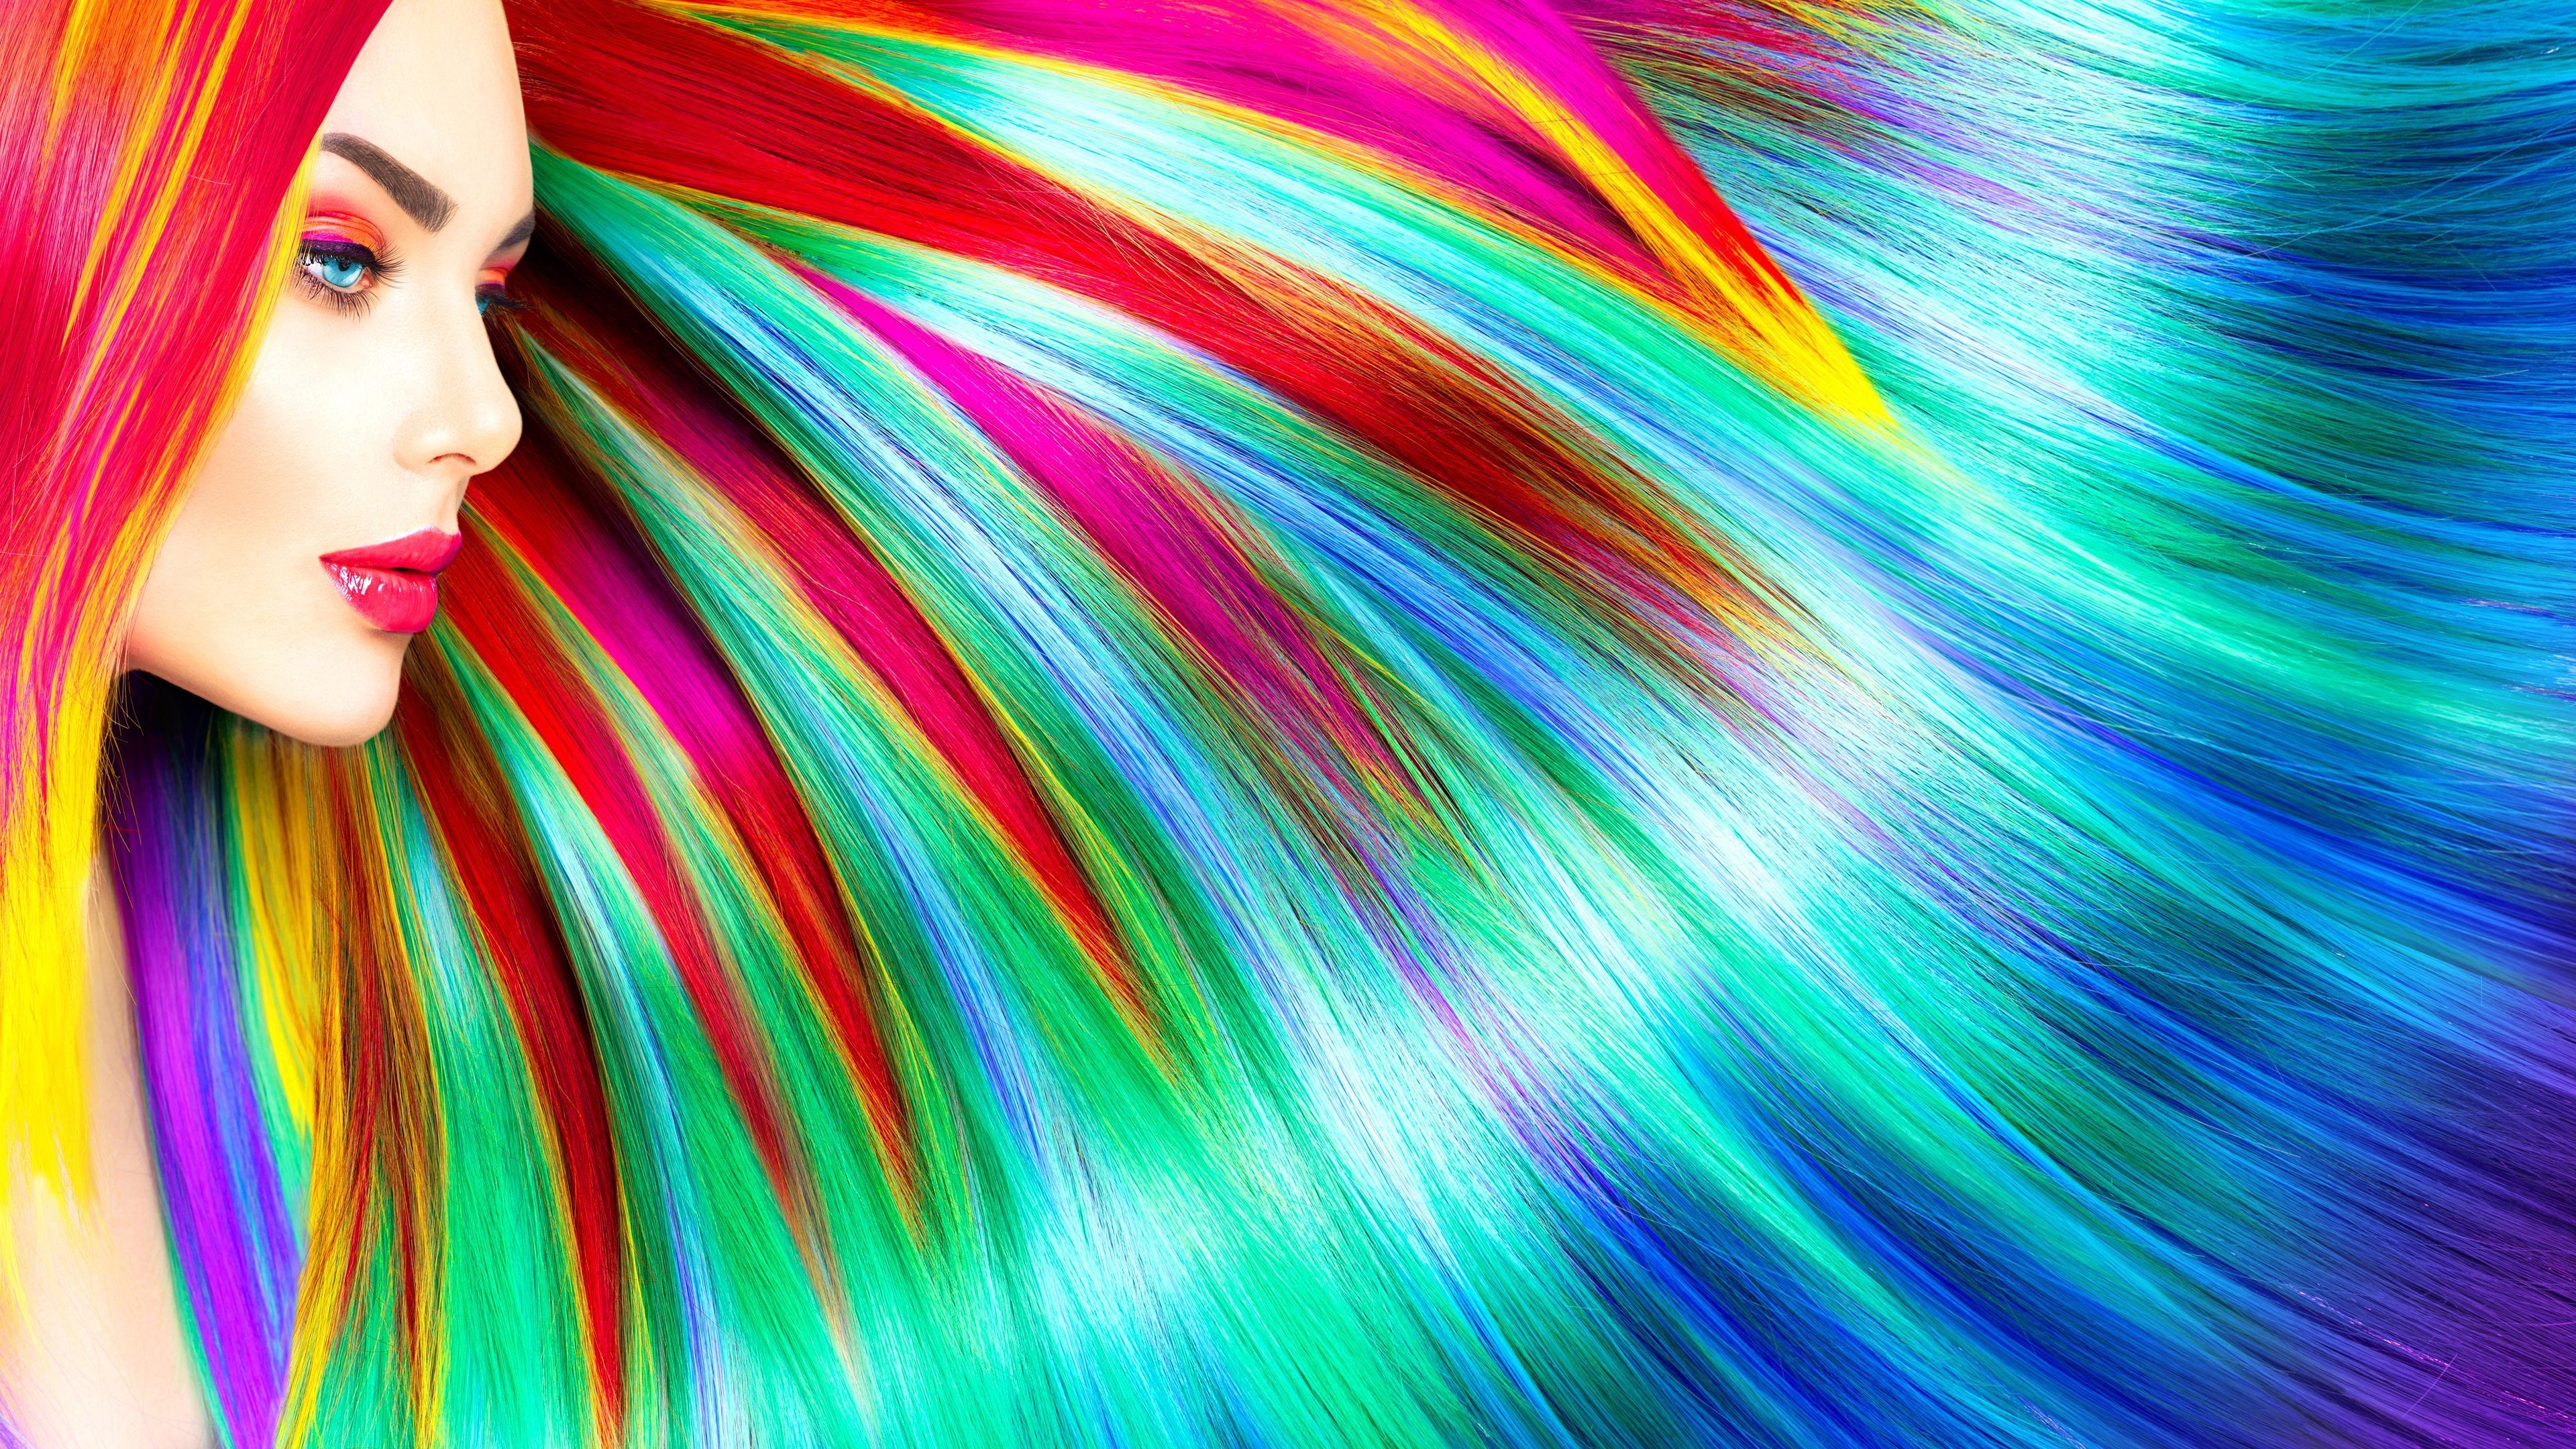 Rainbow Colorful Girl Hairs 5k Rainbow Wallpaper, Hd Wallpaper, Hairs Wallpaper, Girls Wallpaper, Colorful. Colorful Girl, Abstract Wallpaper, Girl Hairstyles